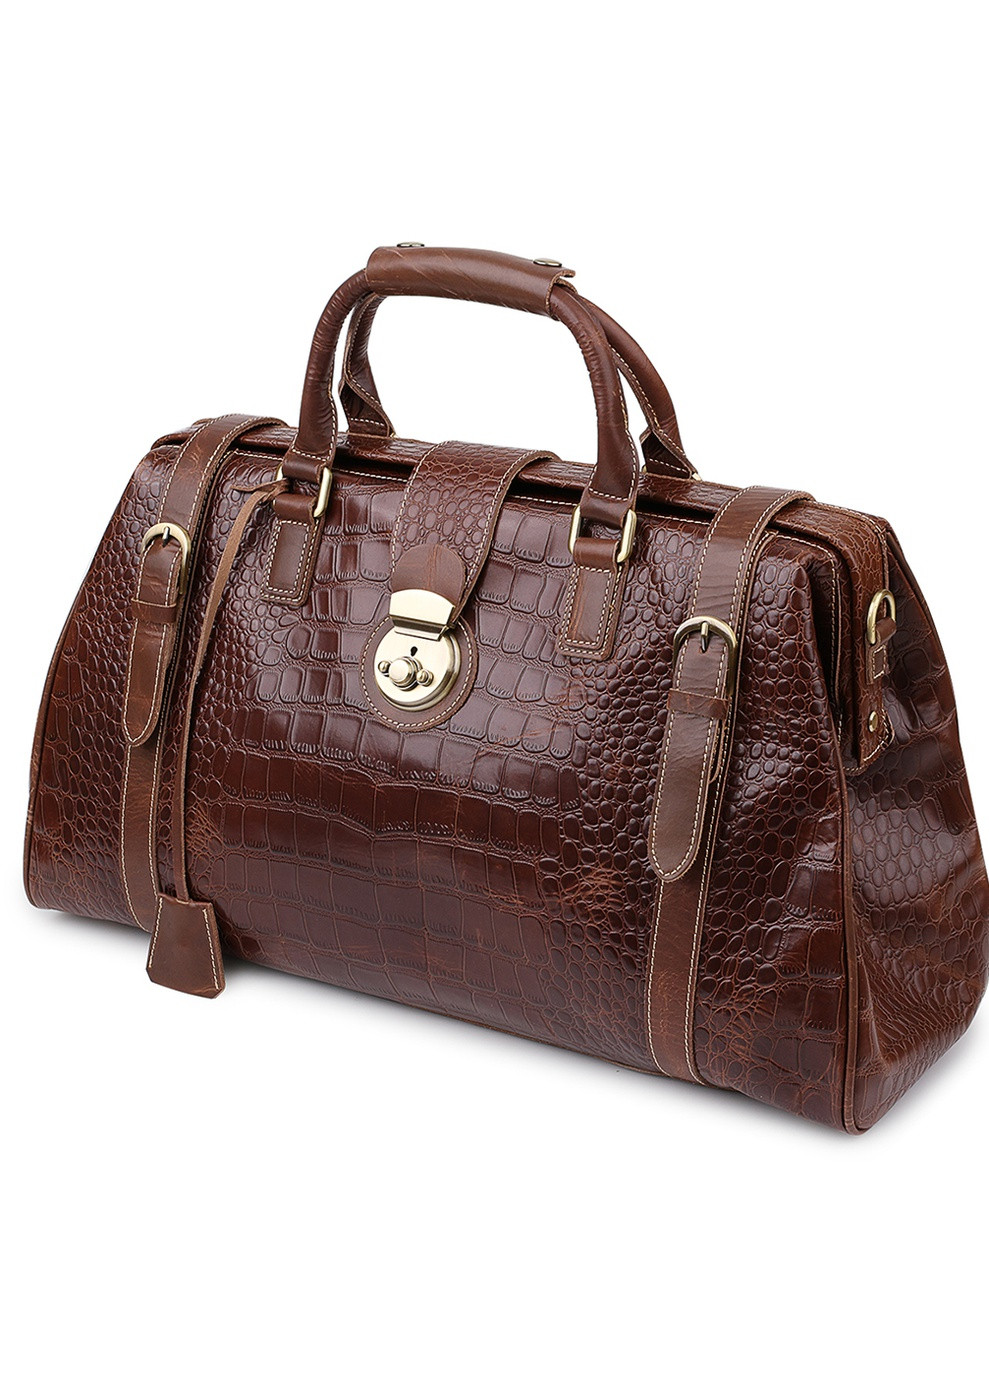 Дорожная кожаная сумка 51х31х15 см Vintage (250096835)